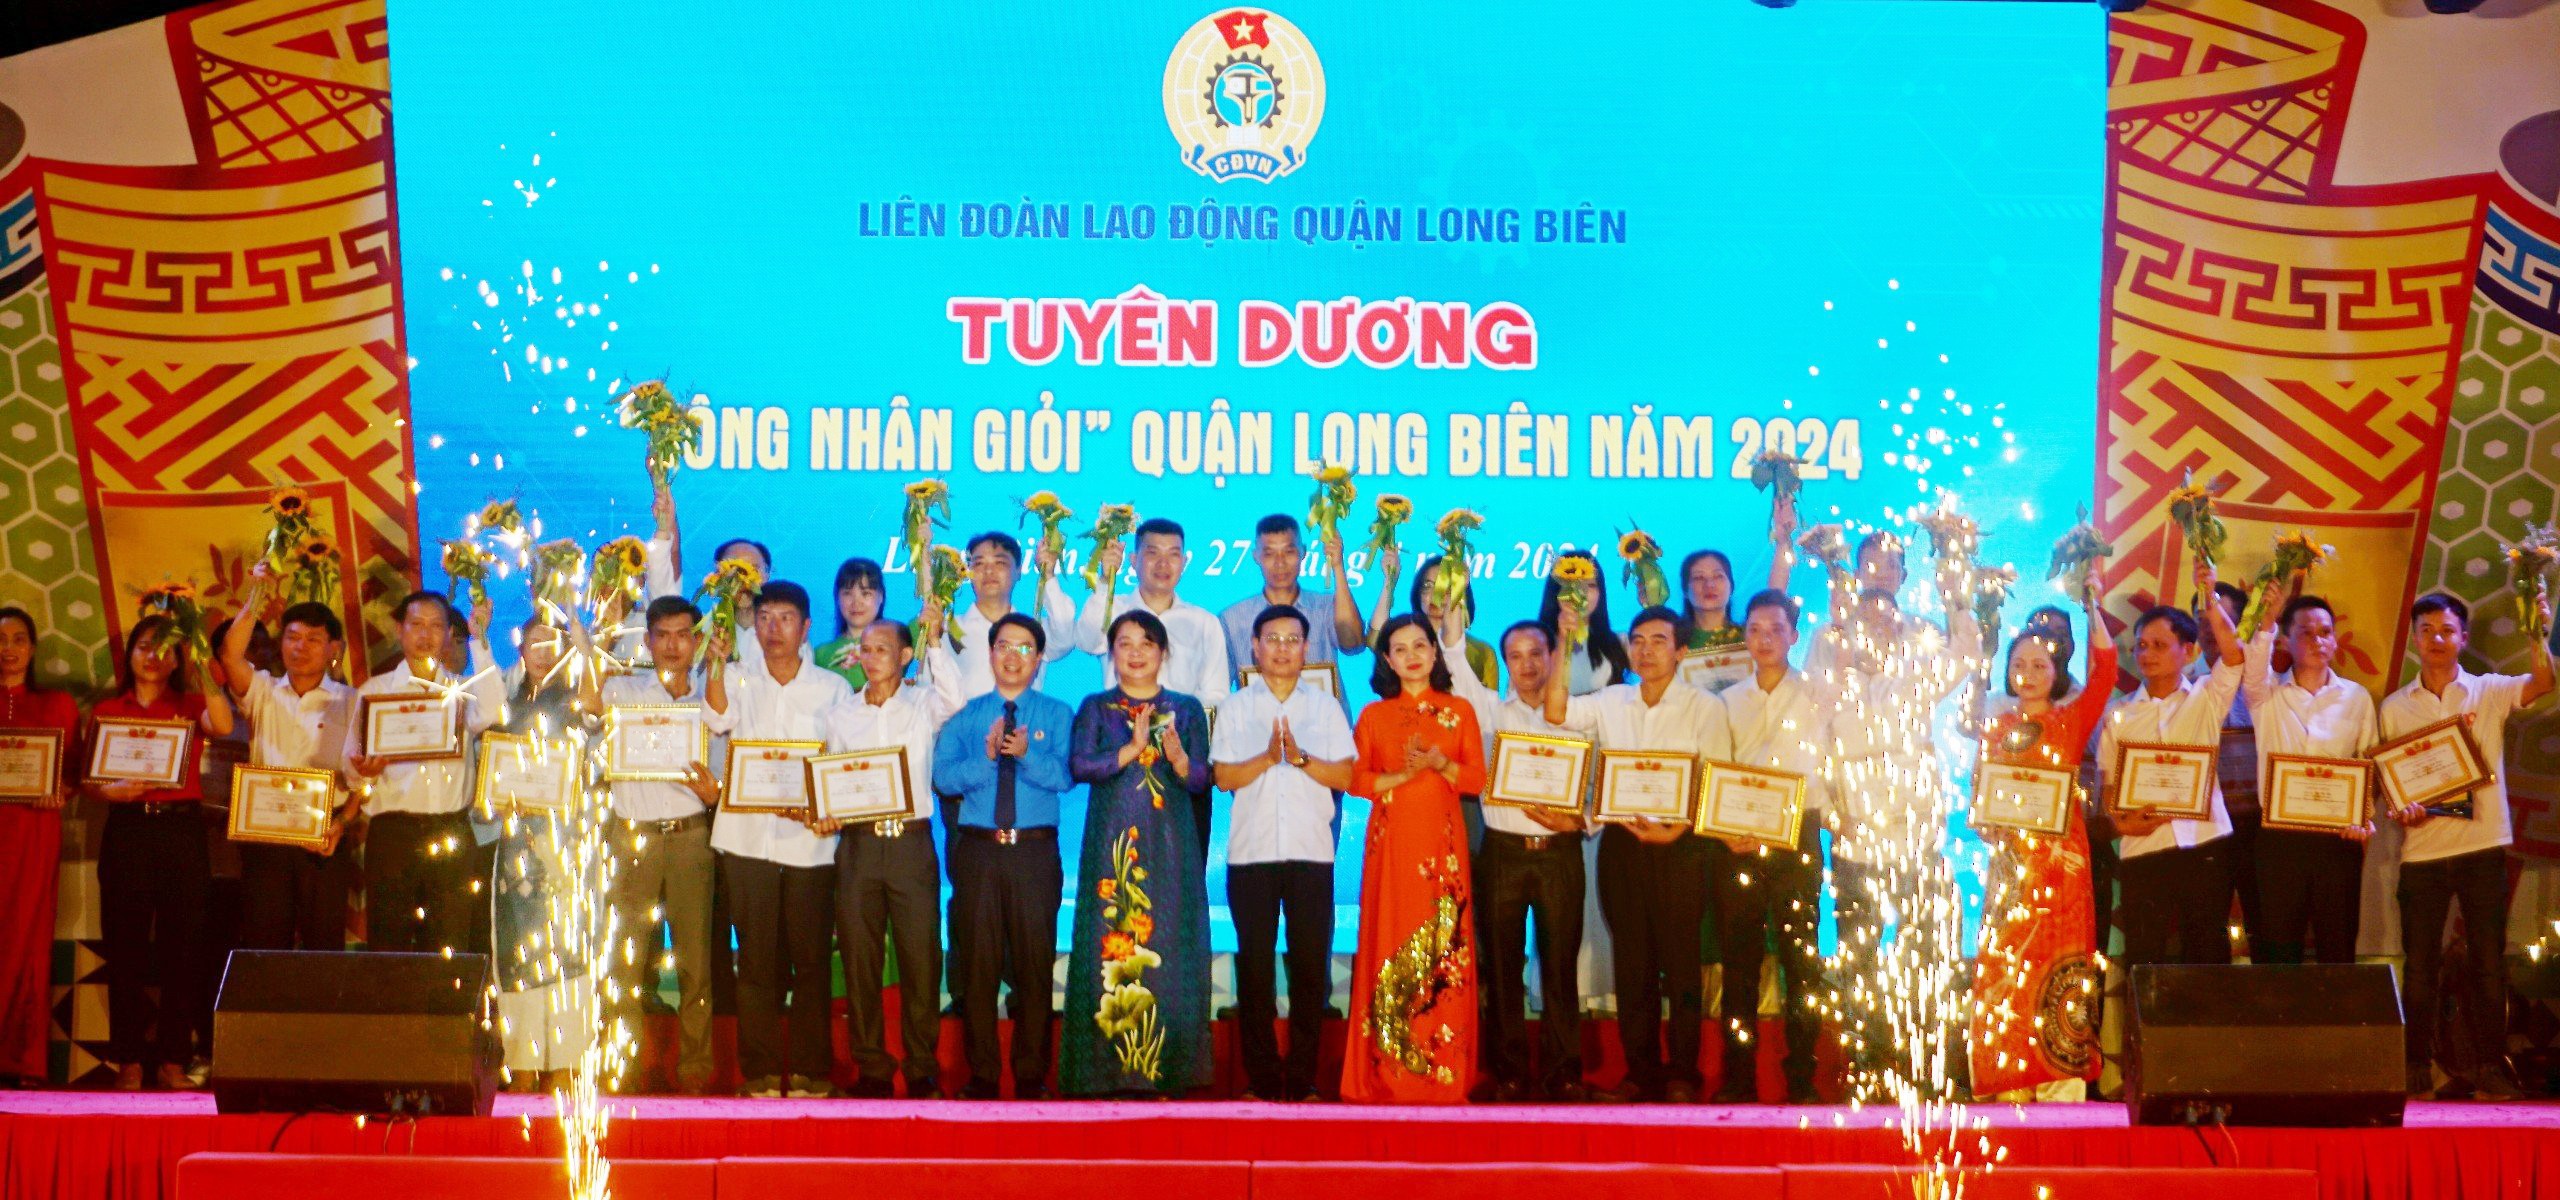 Công đoàn quận Long Biên: Dấu ấn sáng tạo, vì lợi ích đoàn viên